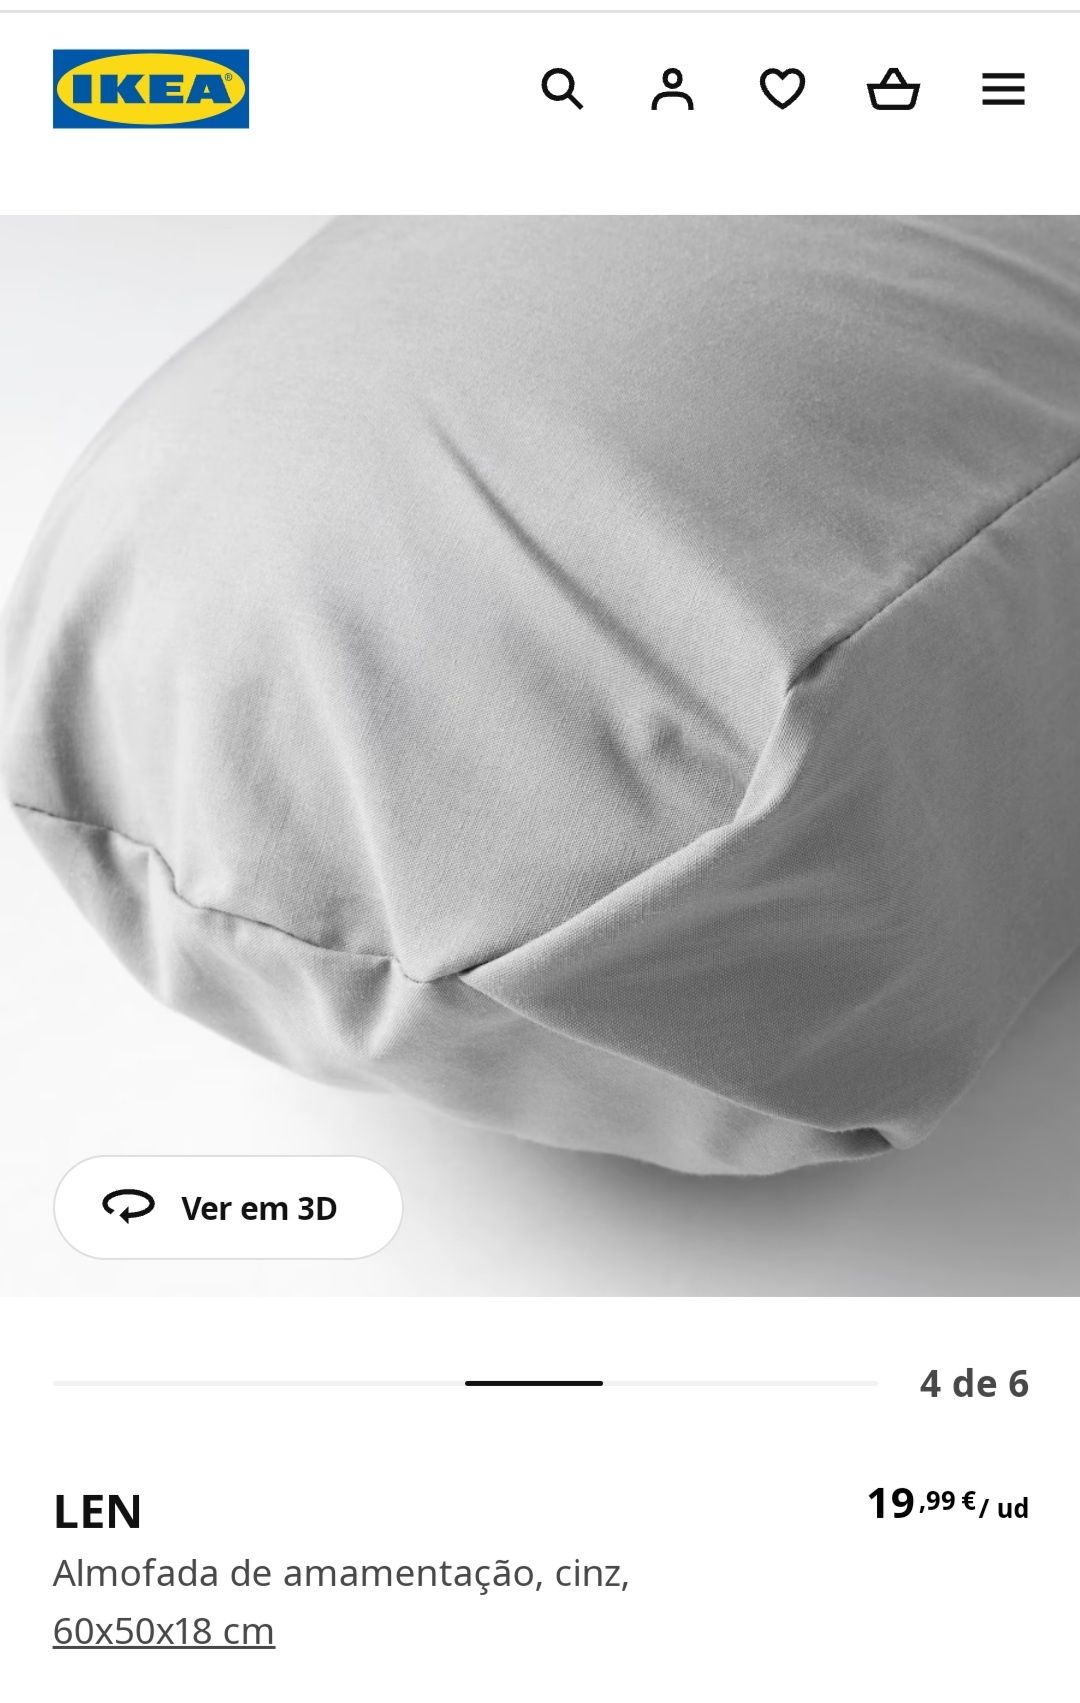 Almofada de amamentação do Ikea